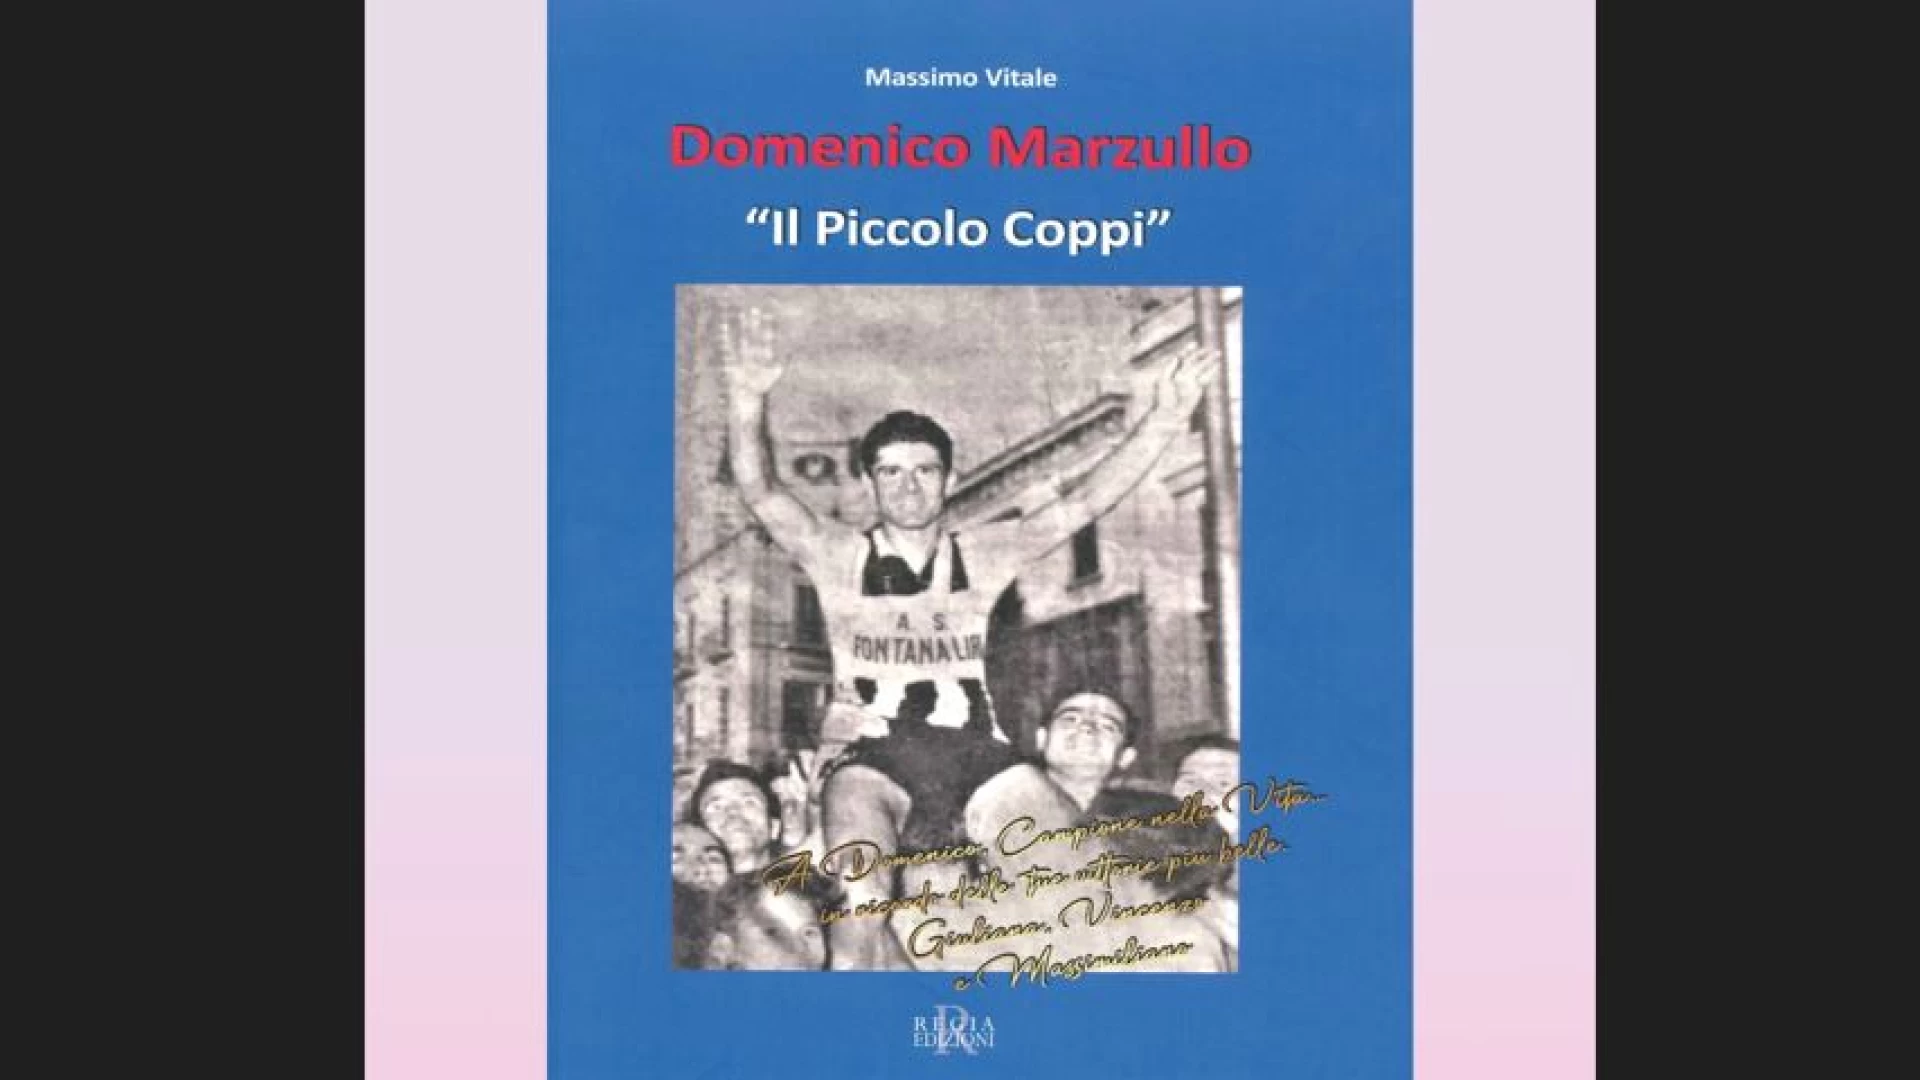 Il Piccolo Coppi, la storia del ciclista Domenico Marzullo raccontata dallo scrittore Massimo Vitale sbarca a Ceprano.